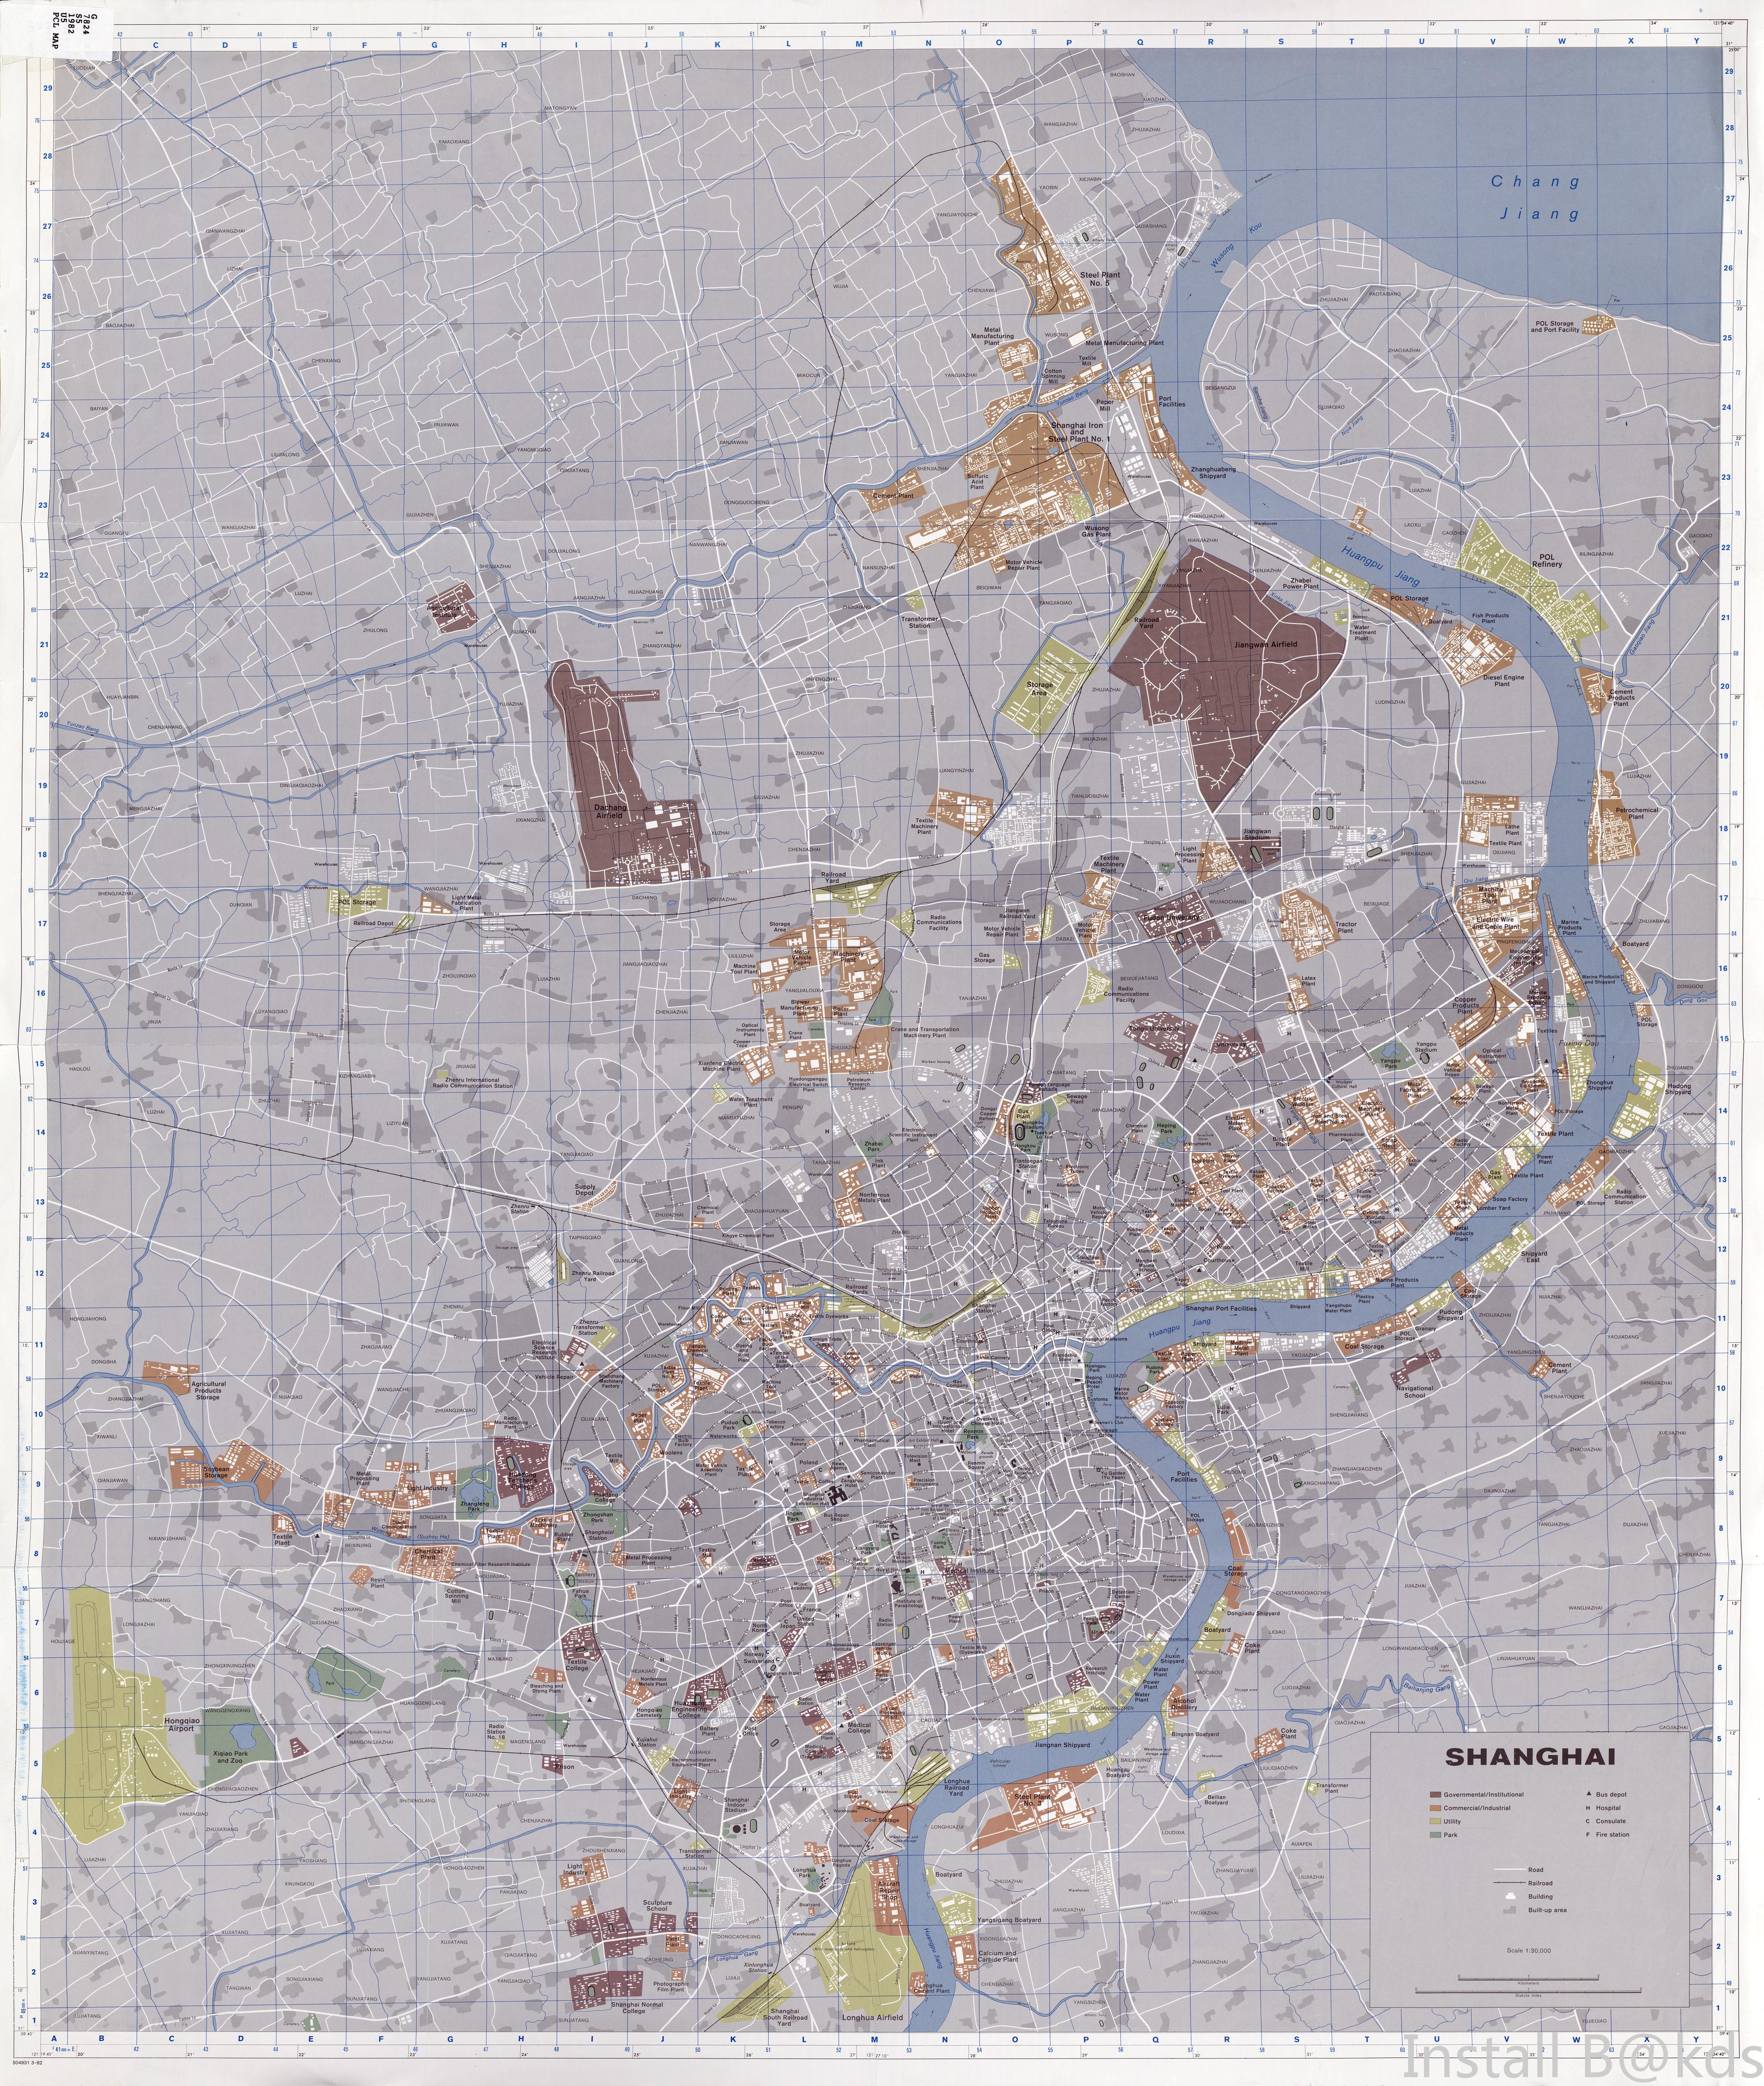 翻到老上海地图(80年代末),高大上的陆家嘴原来叫